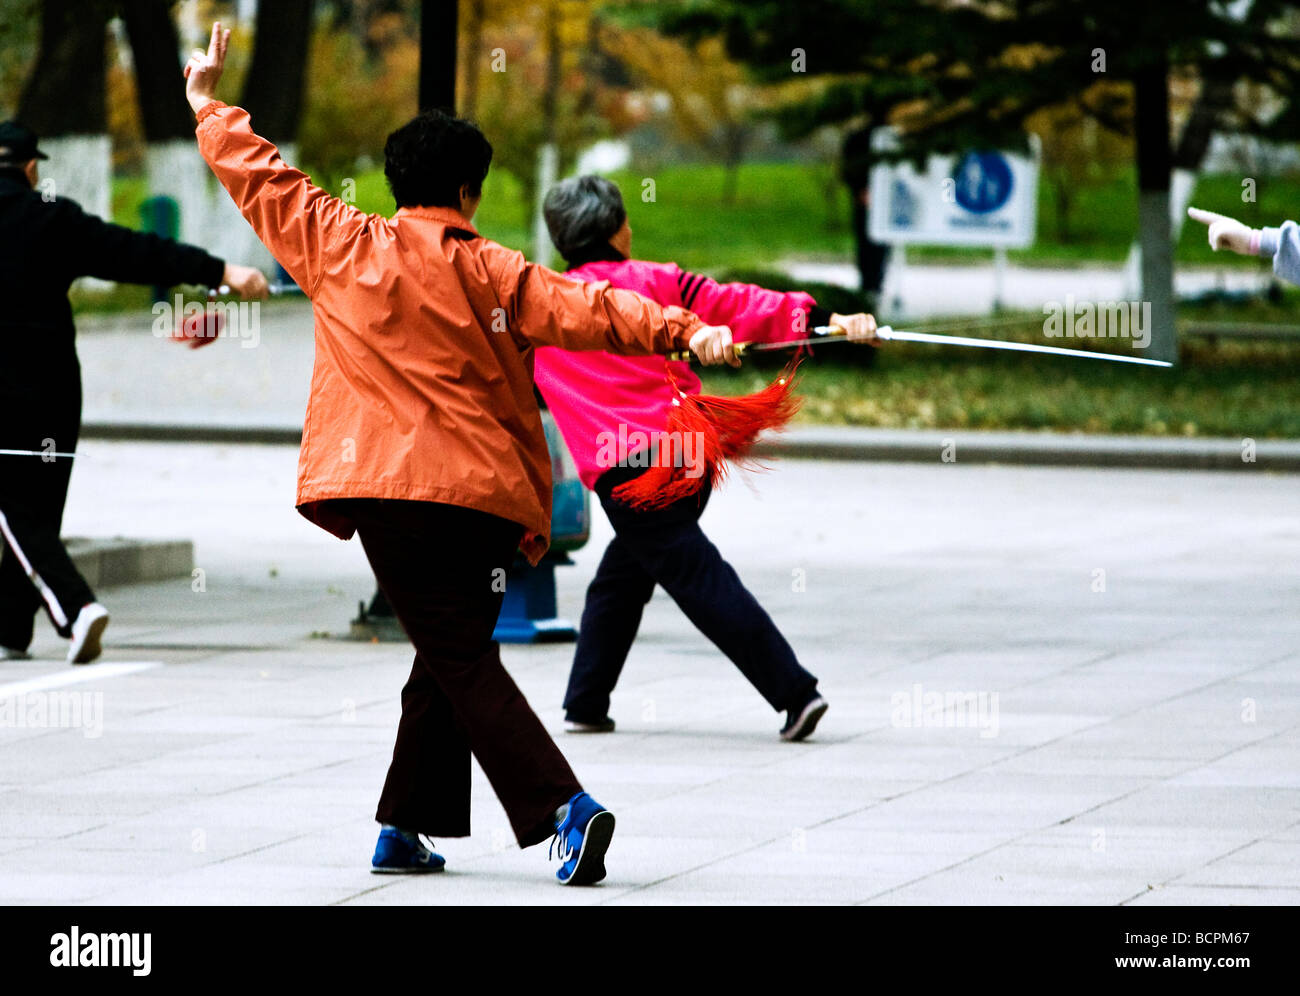 Anziani Le donne cinesi praticare ballo di spada come una forma di esercizio nel parco, Pechino, Cina Foto Stock